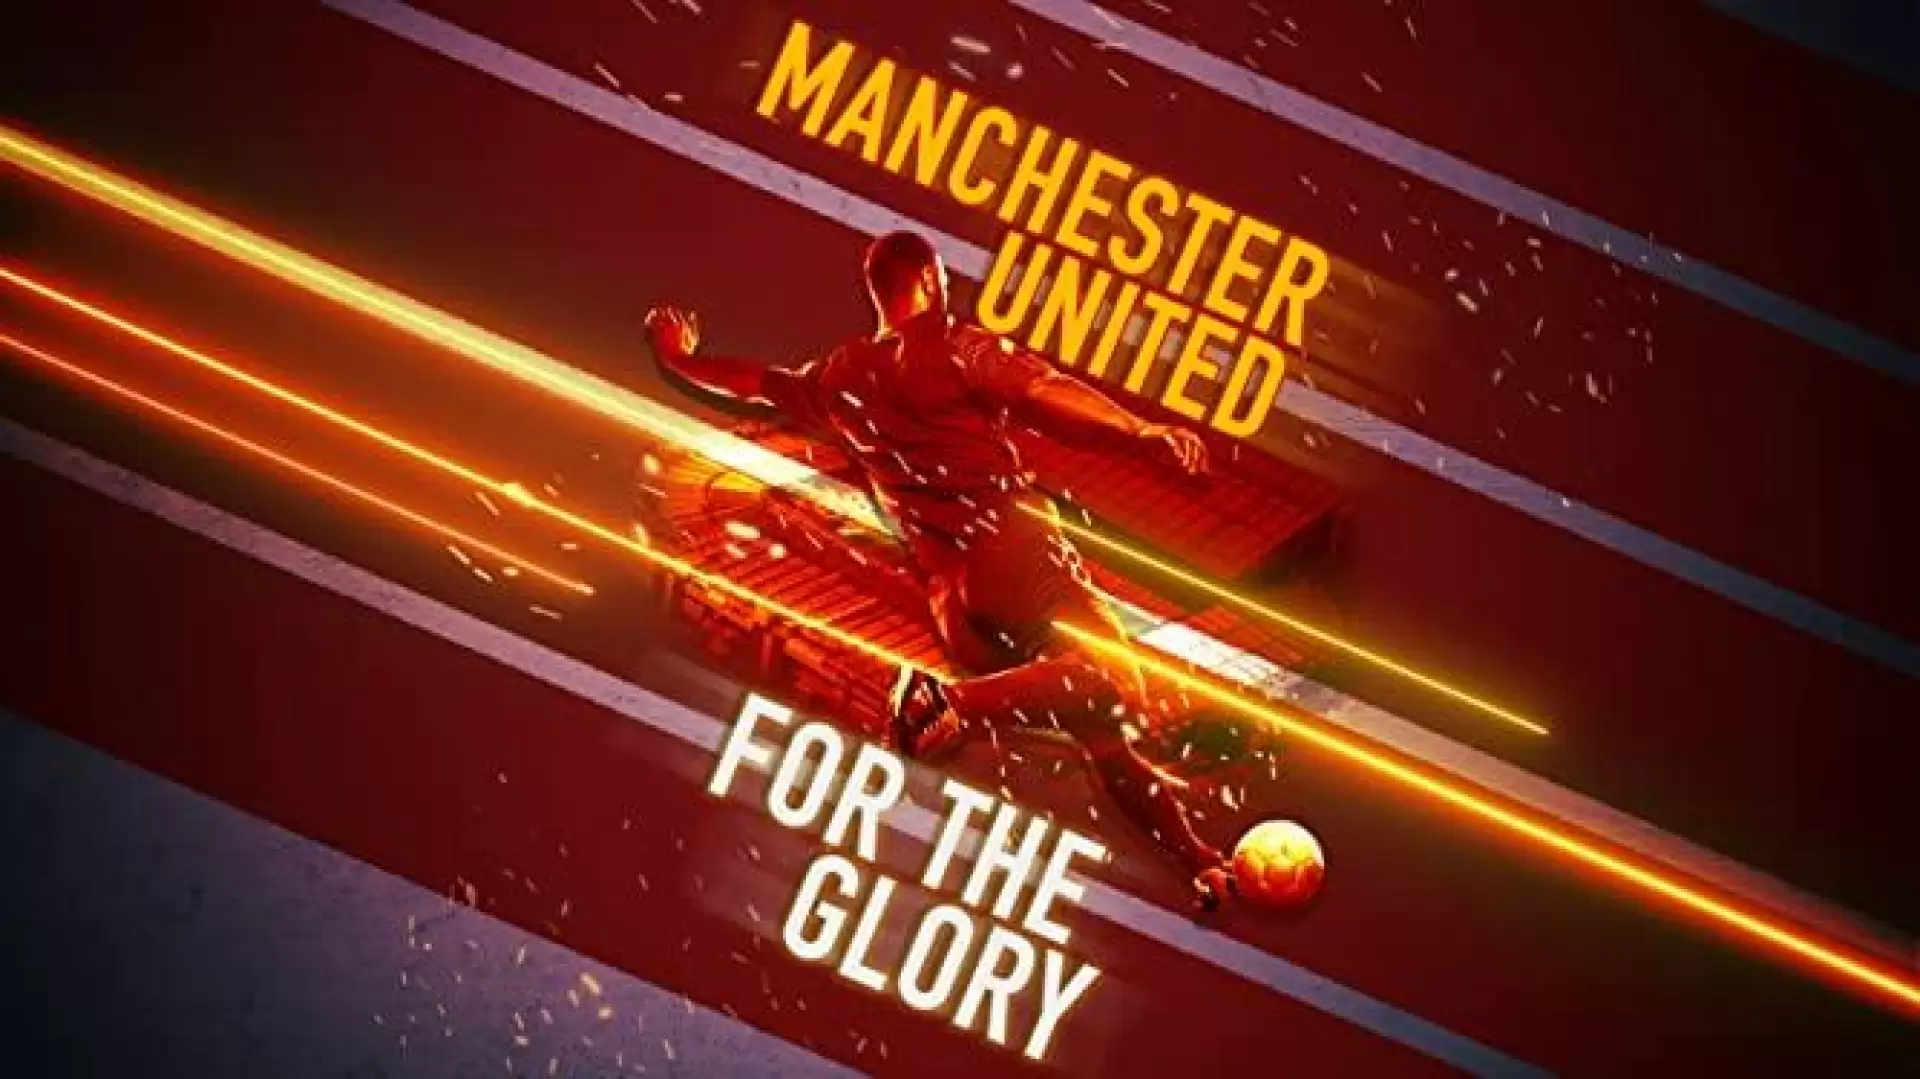 دانلود مستند Manchester United: For the Glory 2020 (منچستر یونایتد: برای افتخار)